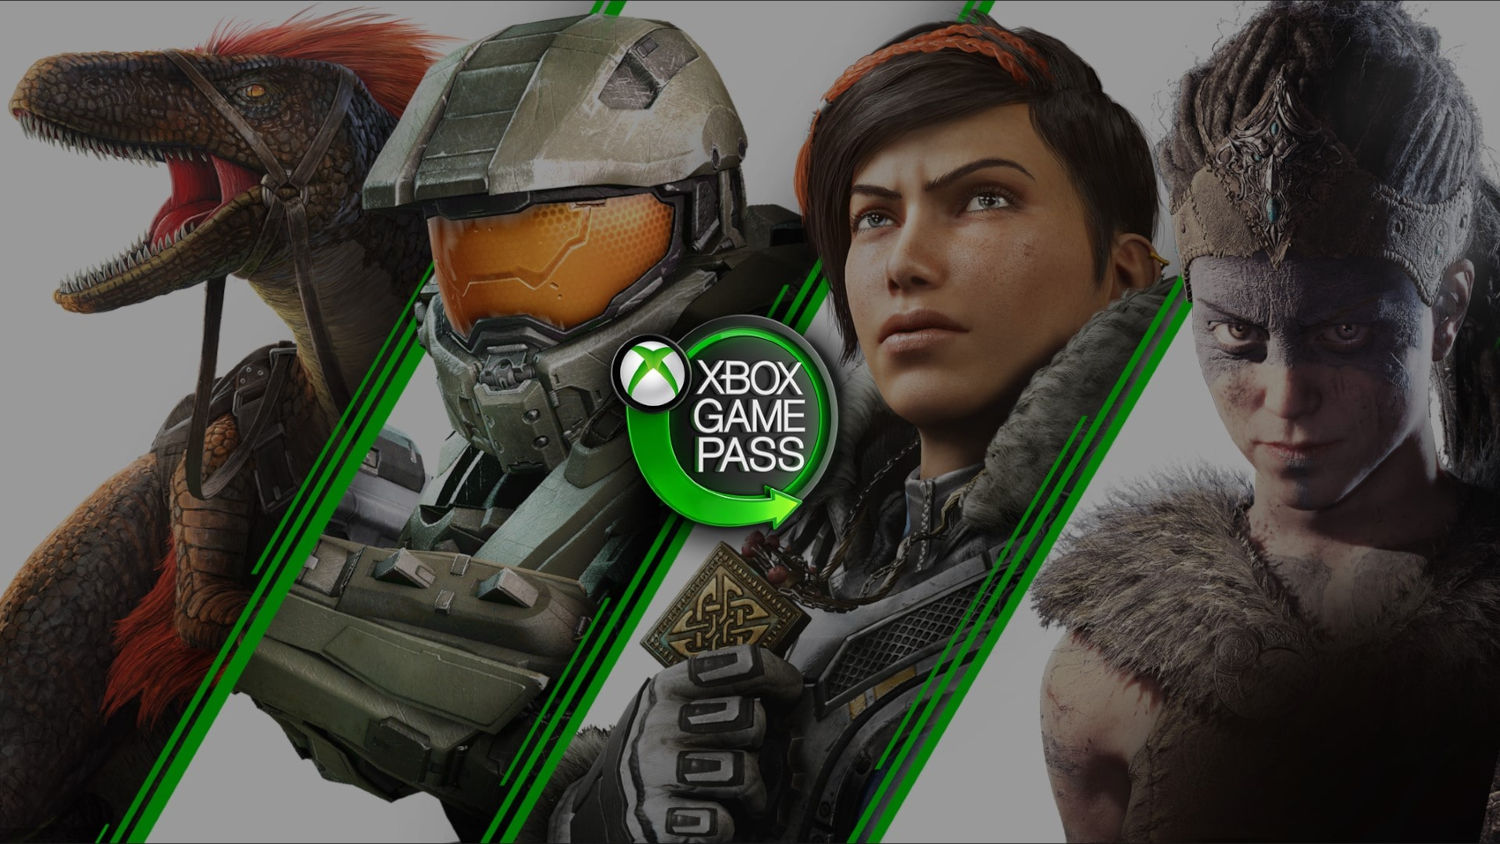 Microsoft começa a testar plano família para Xbox Game Pass – Tecnoblog